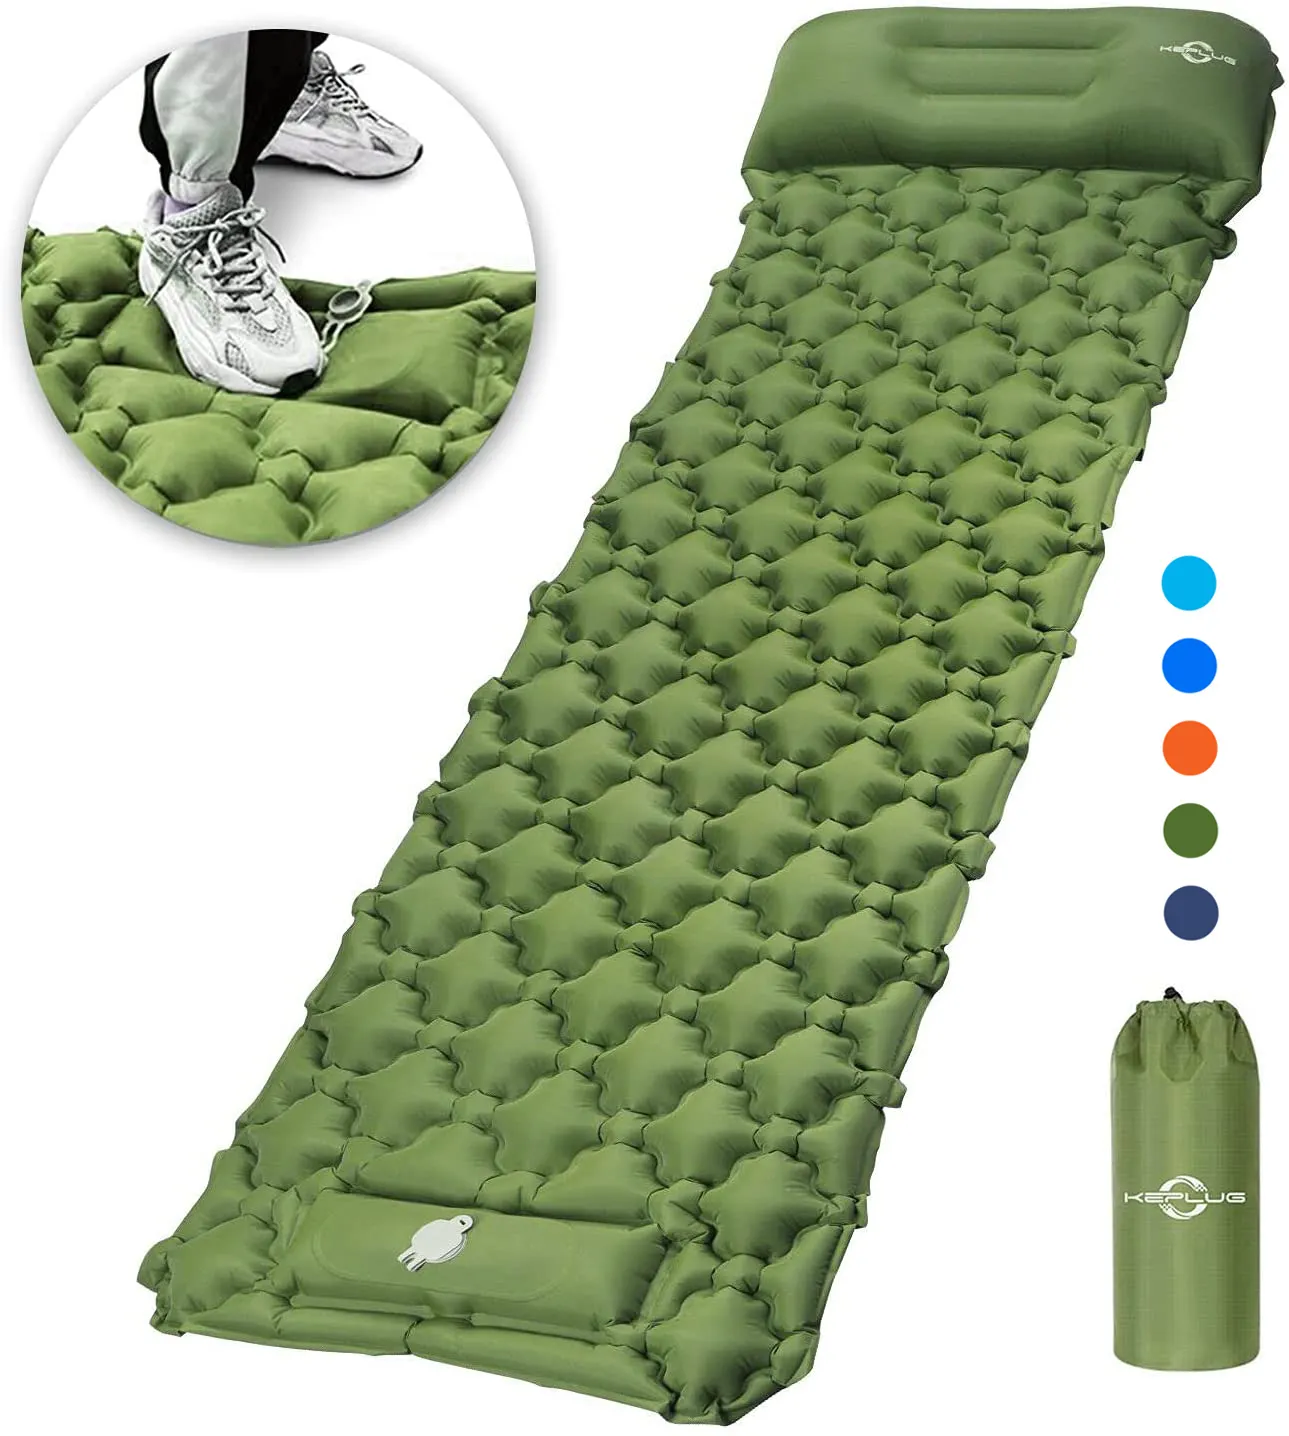 Tapis de couchage de camping gonflable ultraléger avec pompe à pied intégrée, matelas pneumatique léger et compact, meilleur tapis de couchage